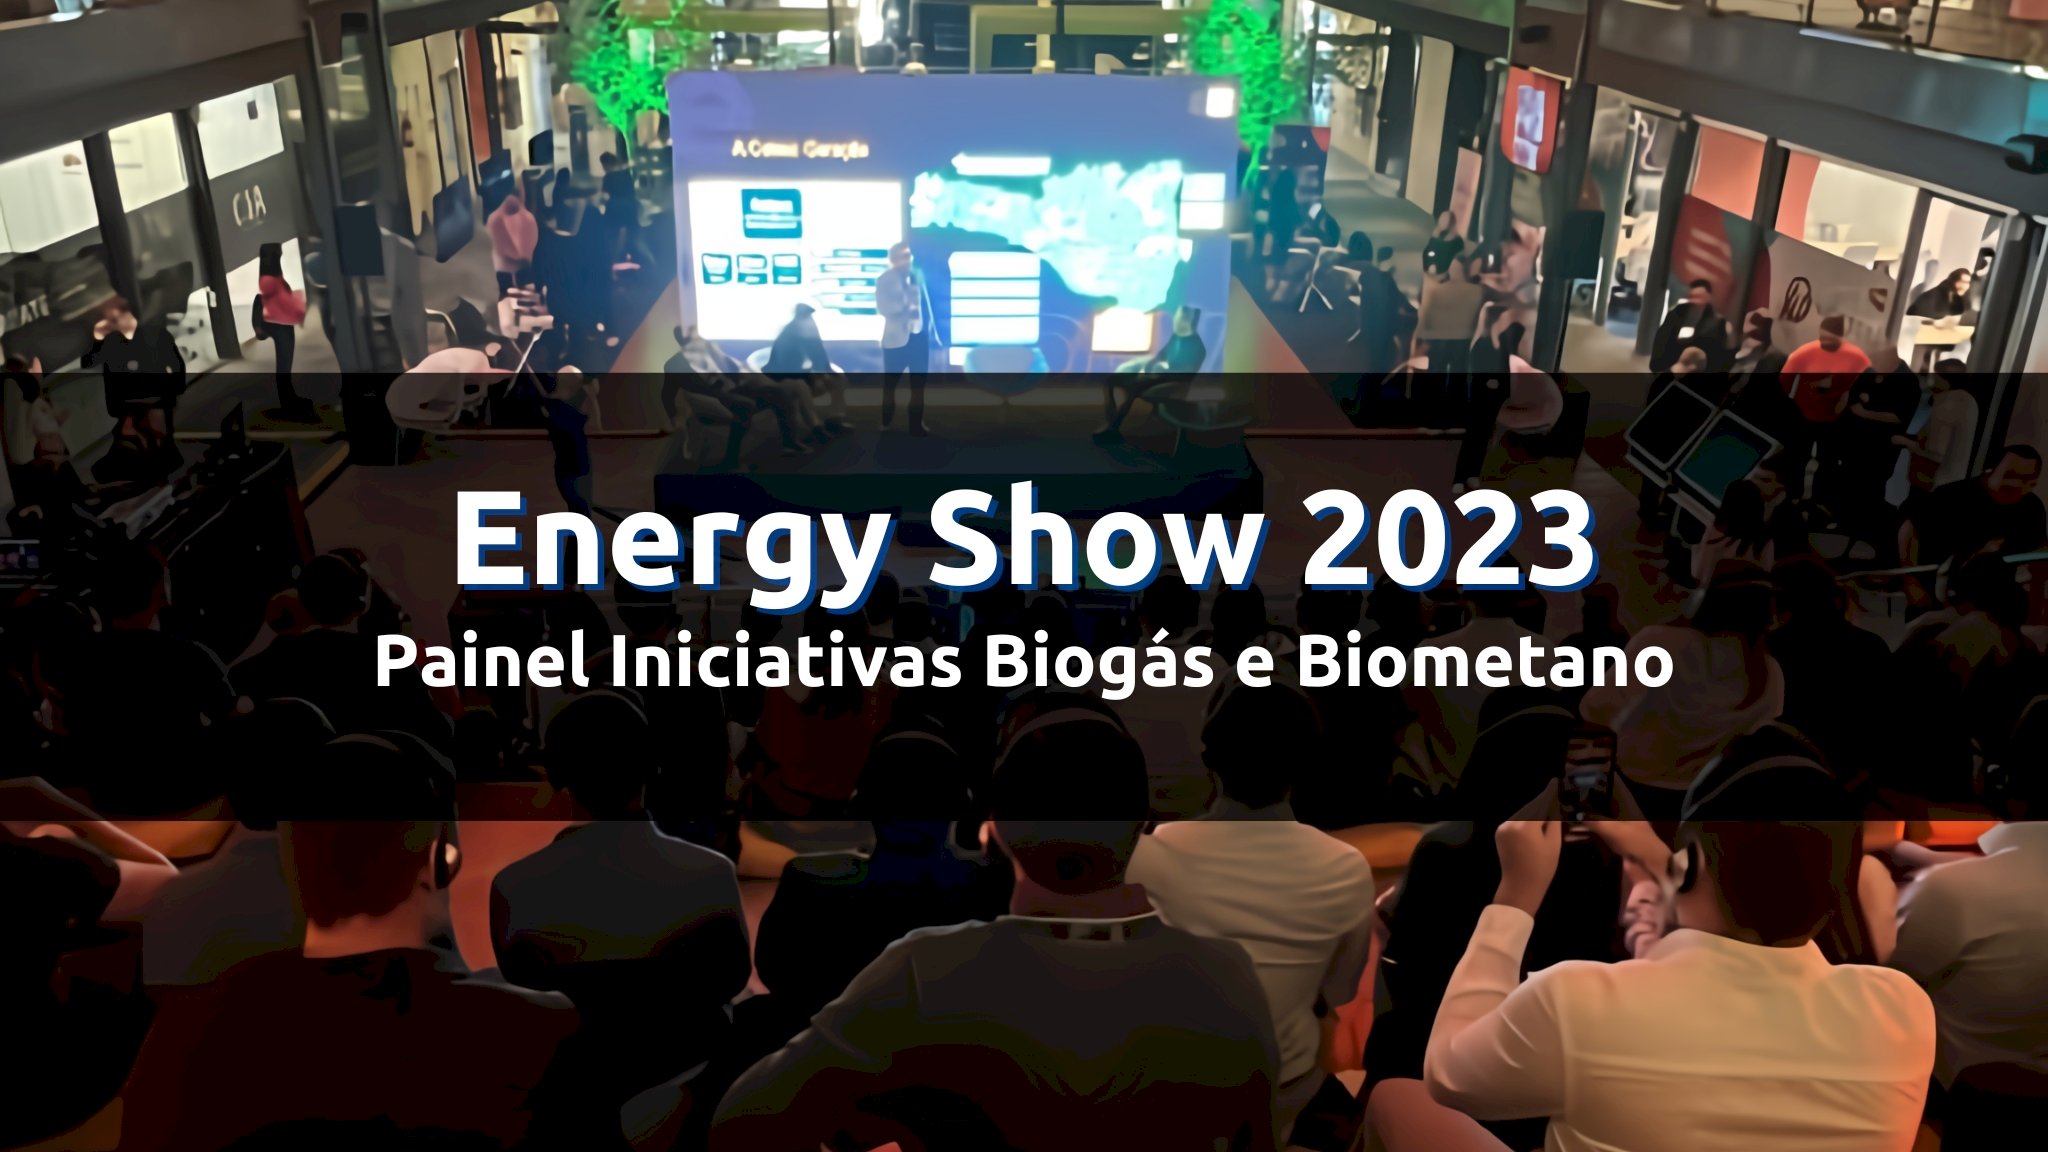 Energy Show - Industria 4.0 dos Gases de Baixa Emissão